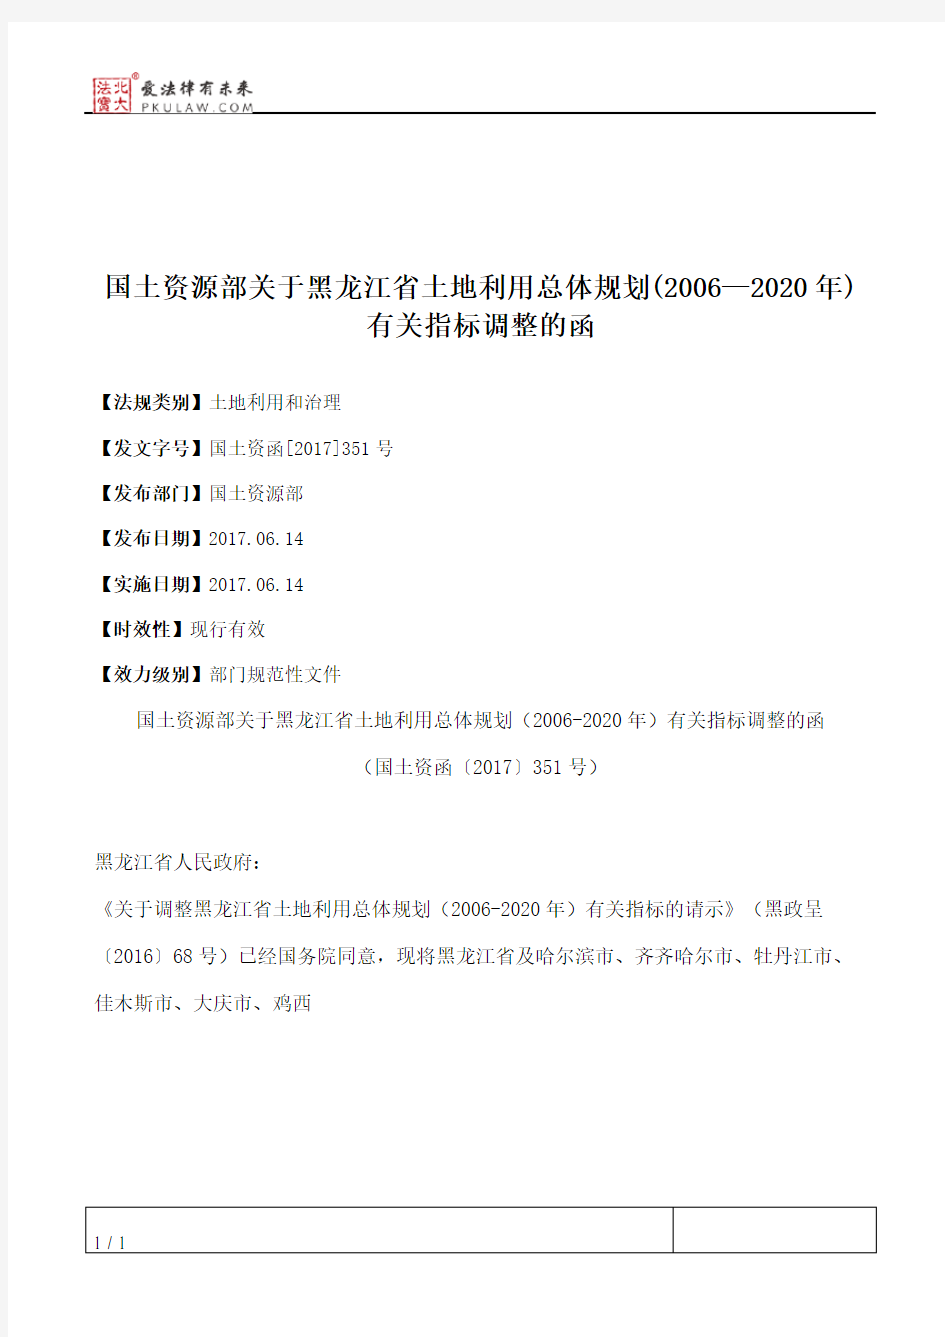 国土资源部关于黑龙江省土地利用总体规划(2006—2020年)有关指标调整的函